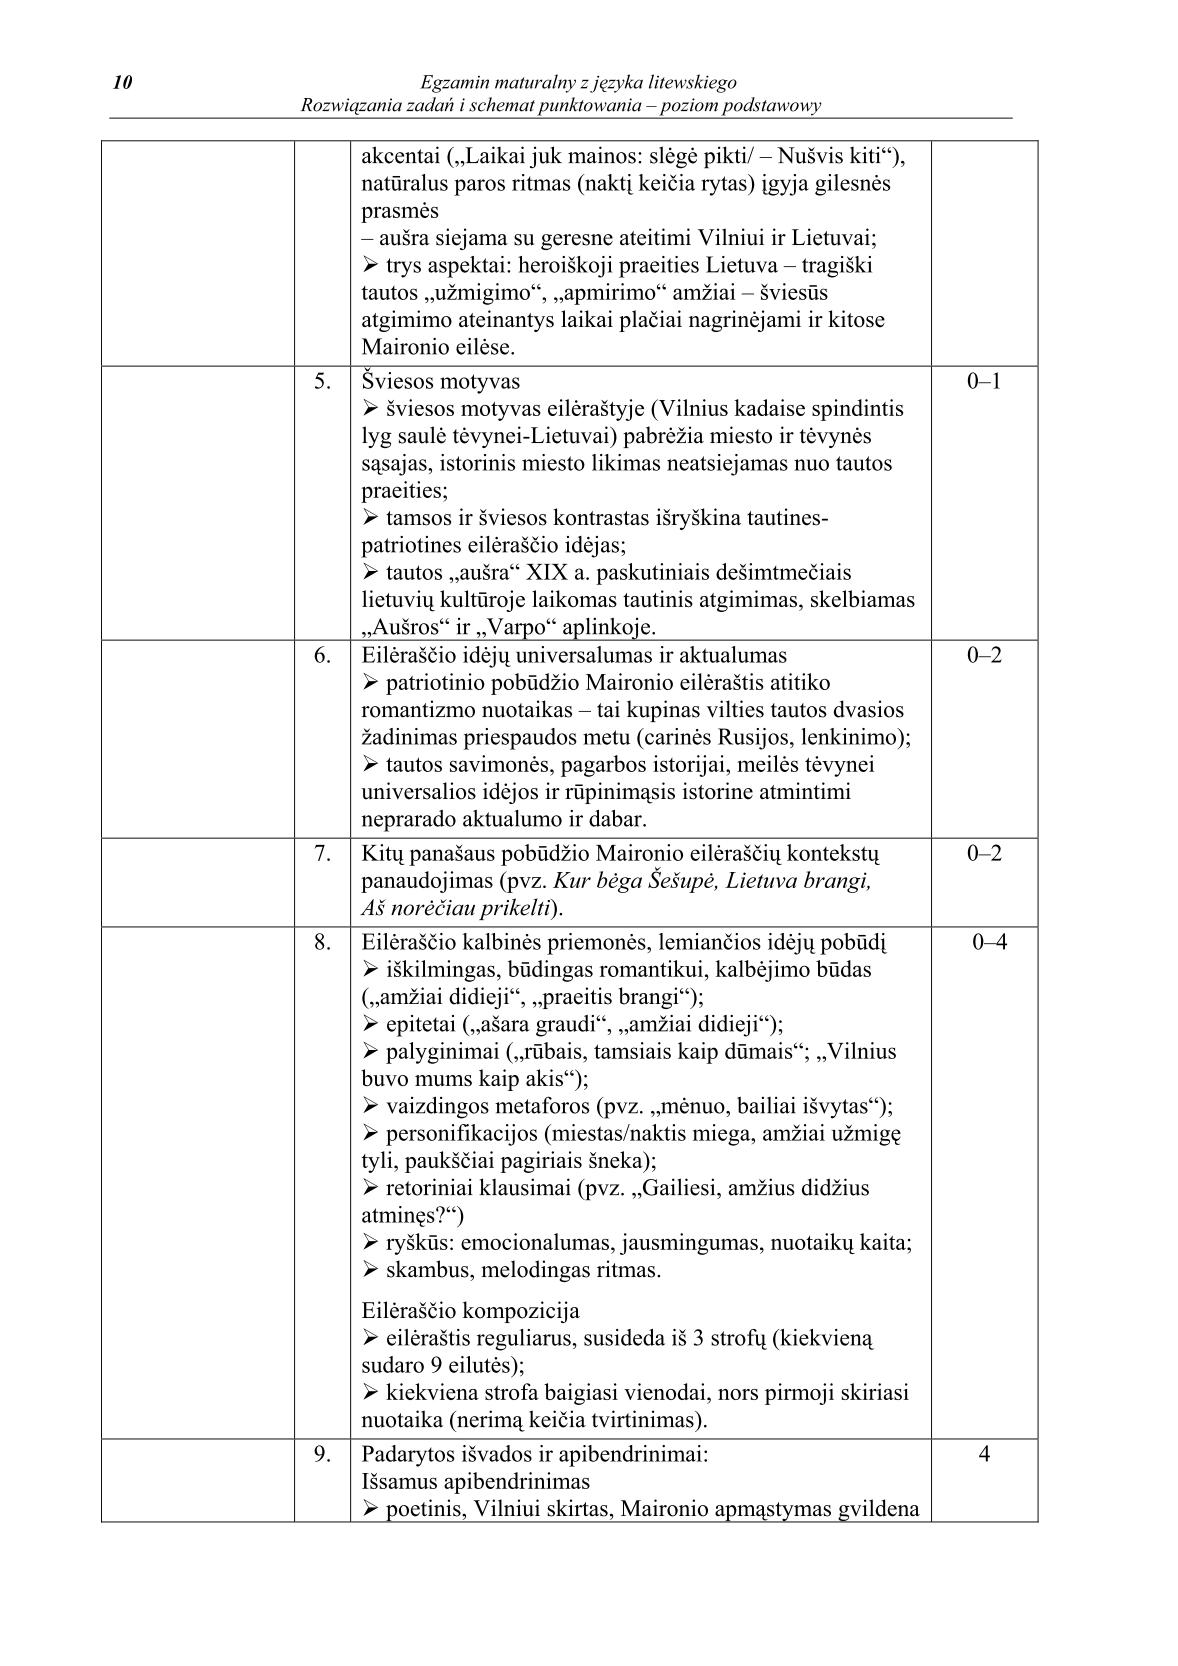 odpowiedzi-jezyk-litewski-poziom-podstawowy-matura-2014-str.10